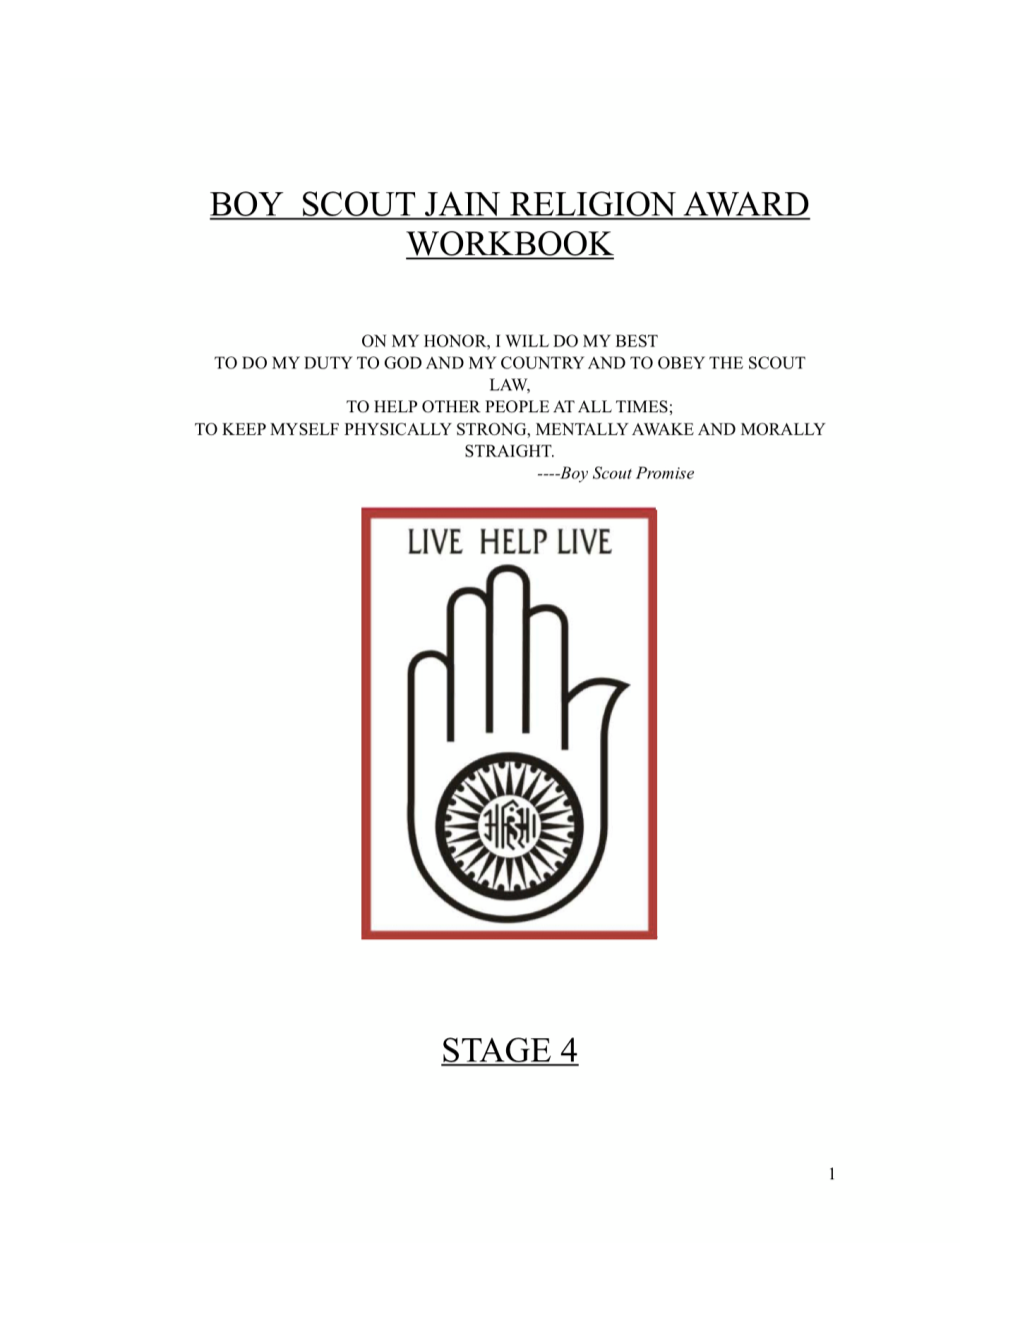 Jain Award Boy Scout Workbook Red Stage 4